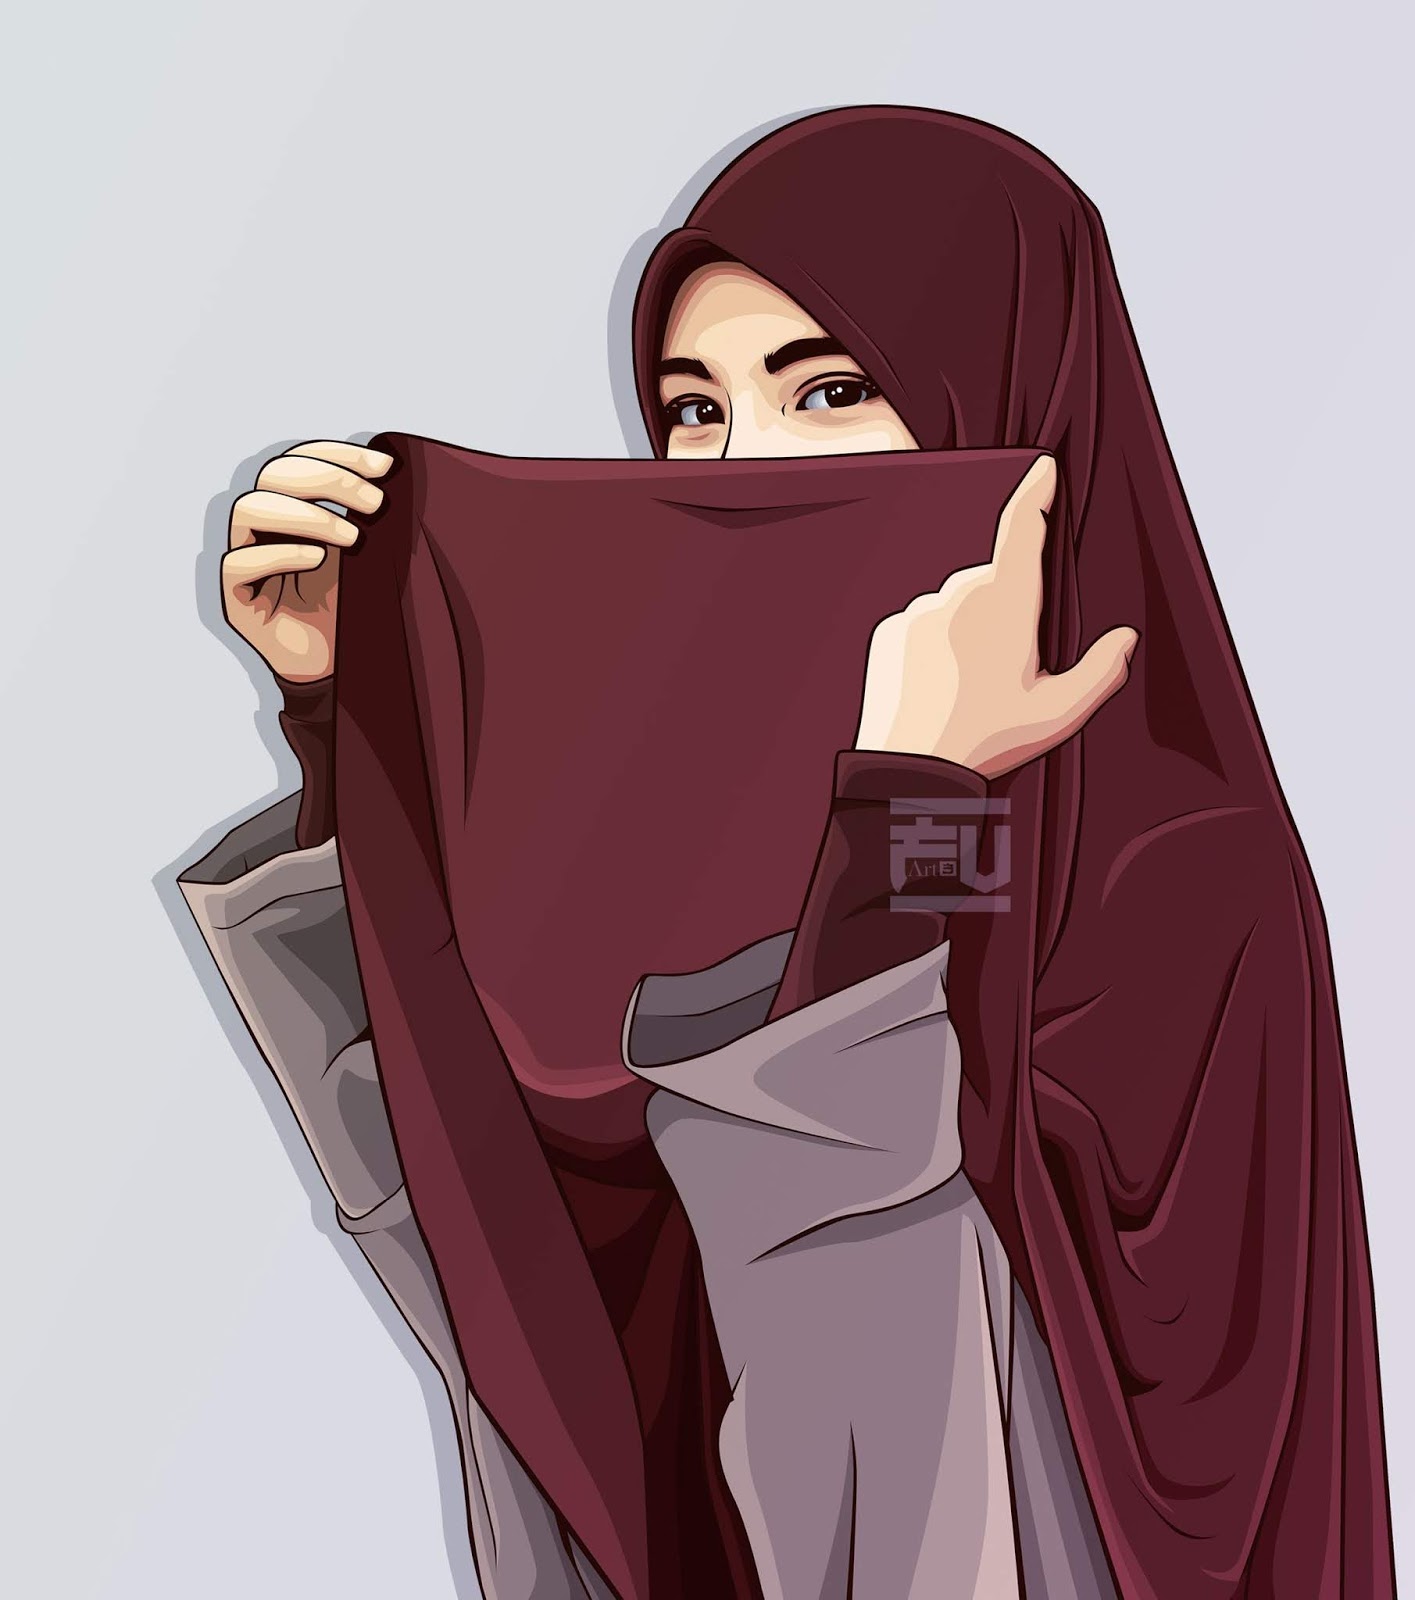 96 Gambar Kartun Muslimah Bercadar Simple Pilihan Cikimmcom